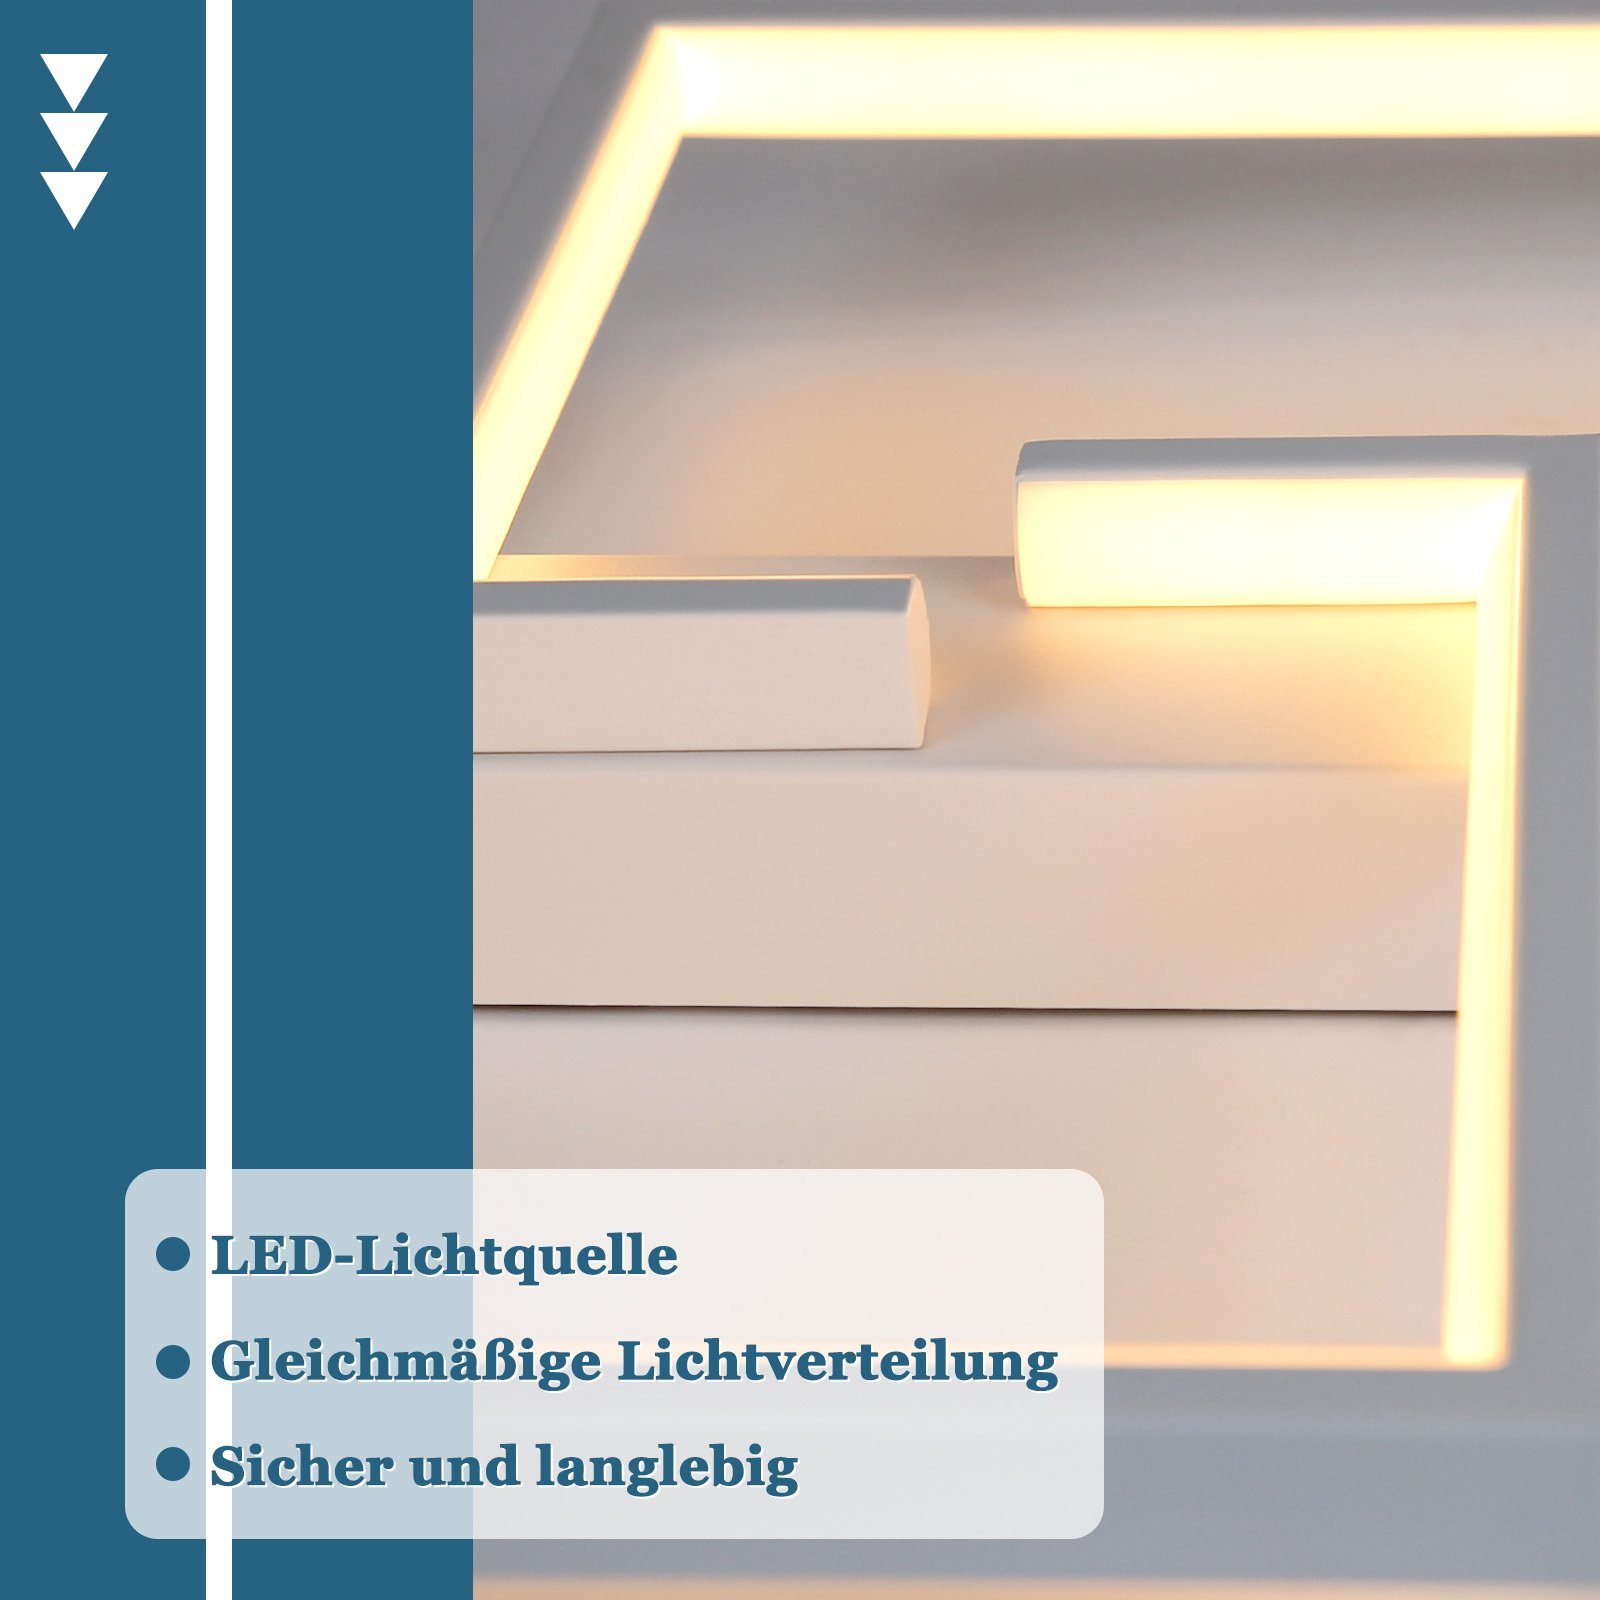 ZMH LED Deckenleuchte Deckenlampe warmweiß, LED für Modern weiß, Flur, fest integriert, 30cm Lampenperlen, 3000k, Hochwertige Schlafzimmer